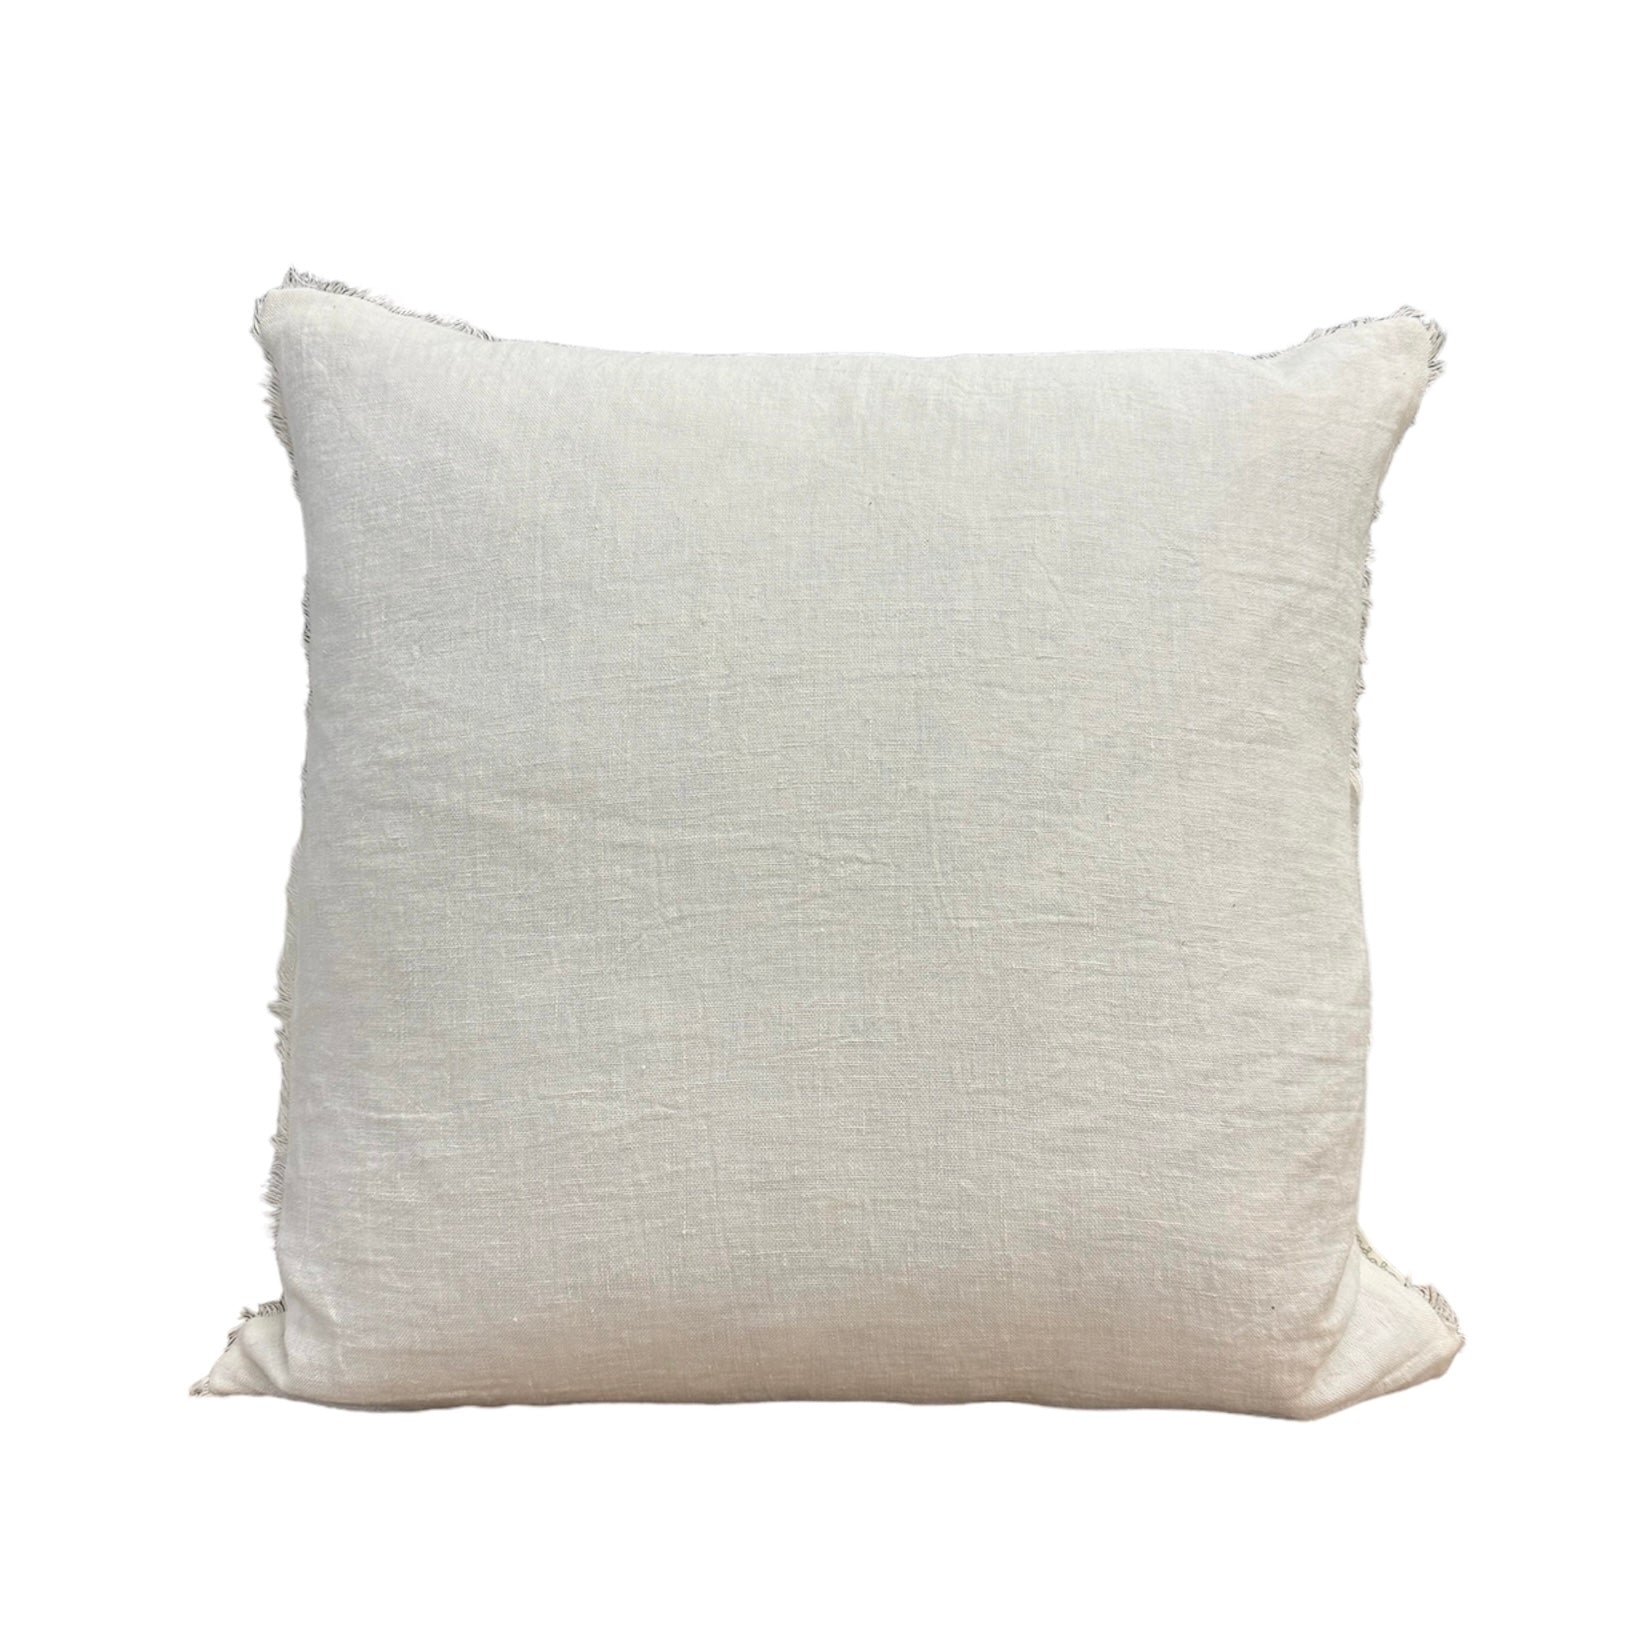 Ivory Linen Pillow